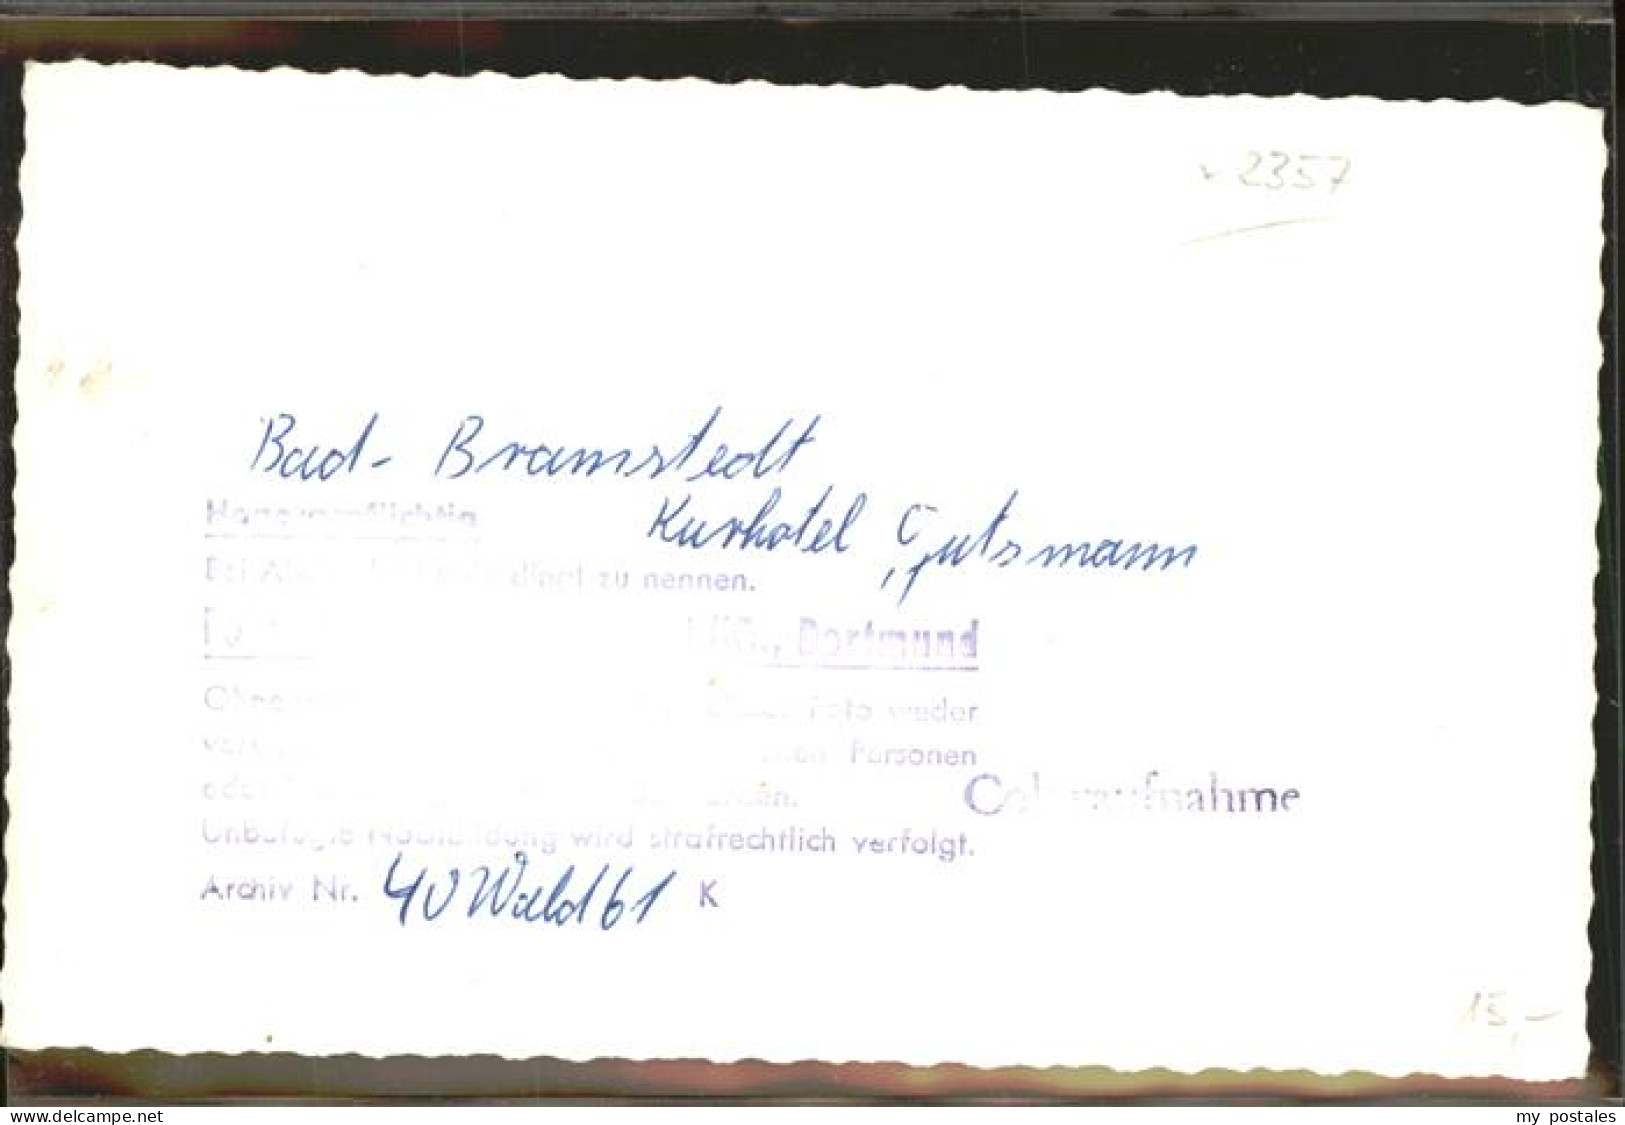 41387707 Bad Bramstedt Kurhotel Gutsmann Restaurant Bad Bramstedt - Bad Bramstedt